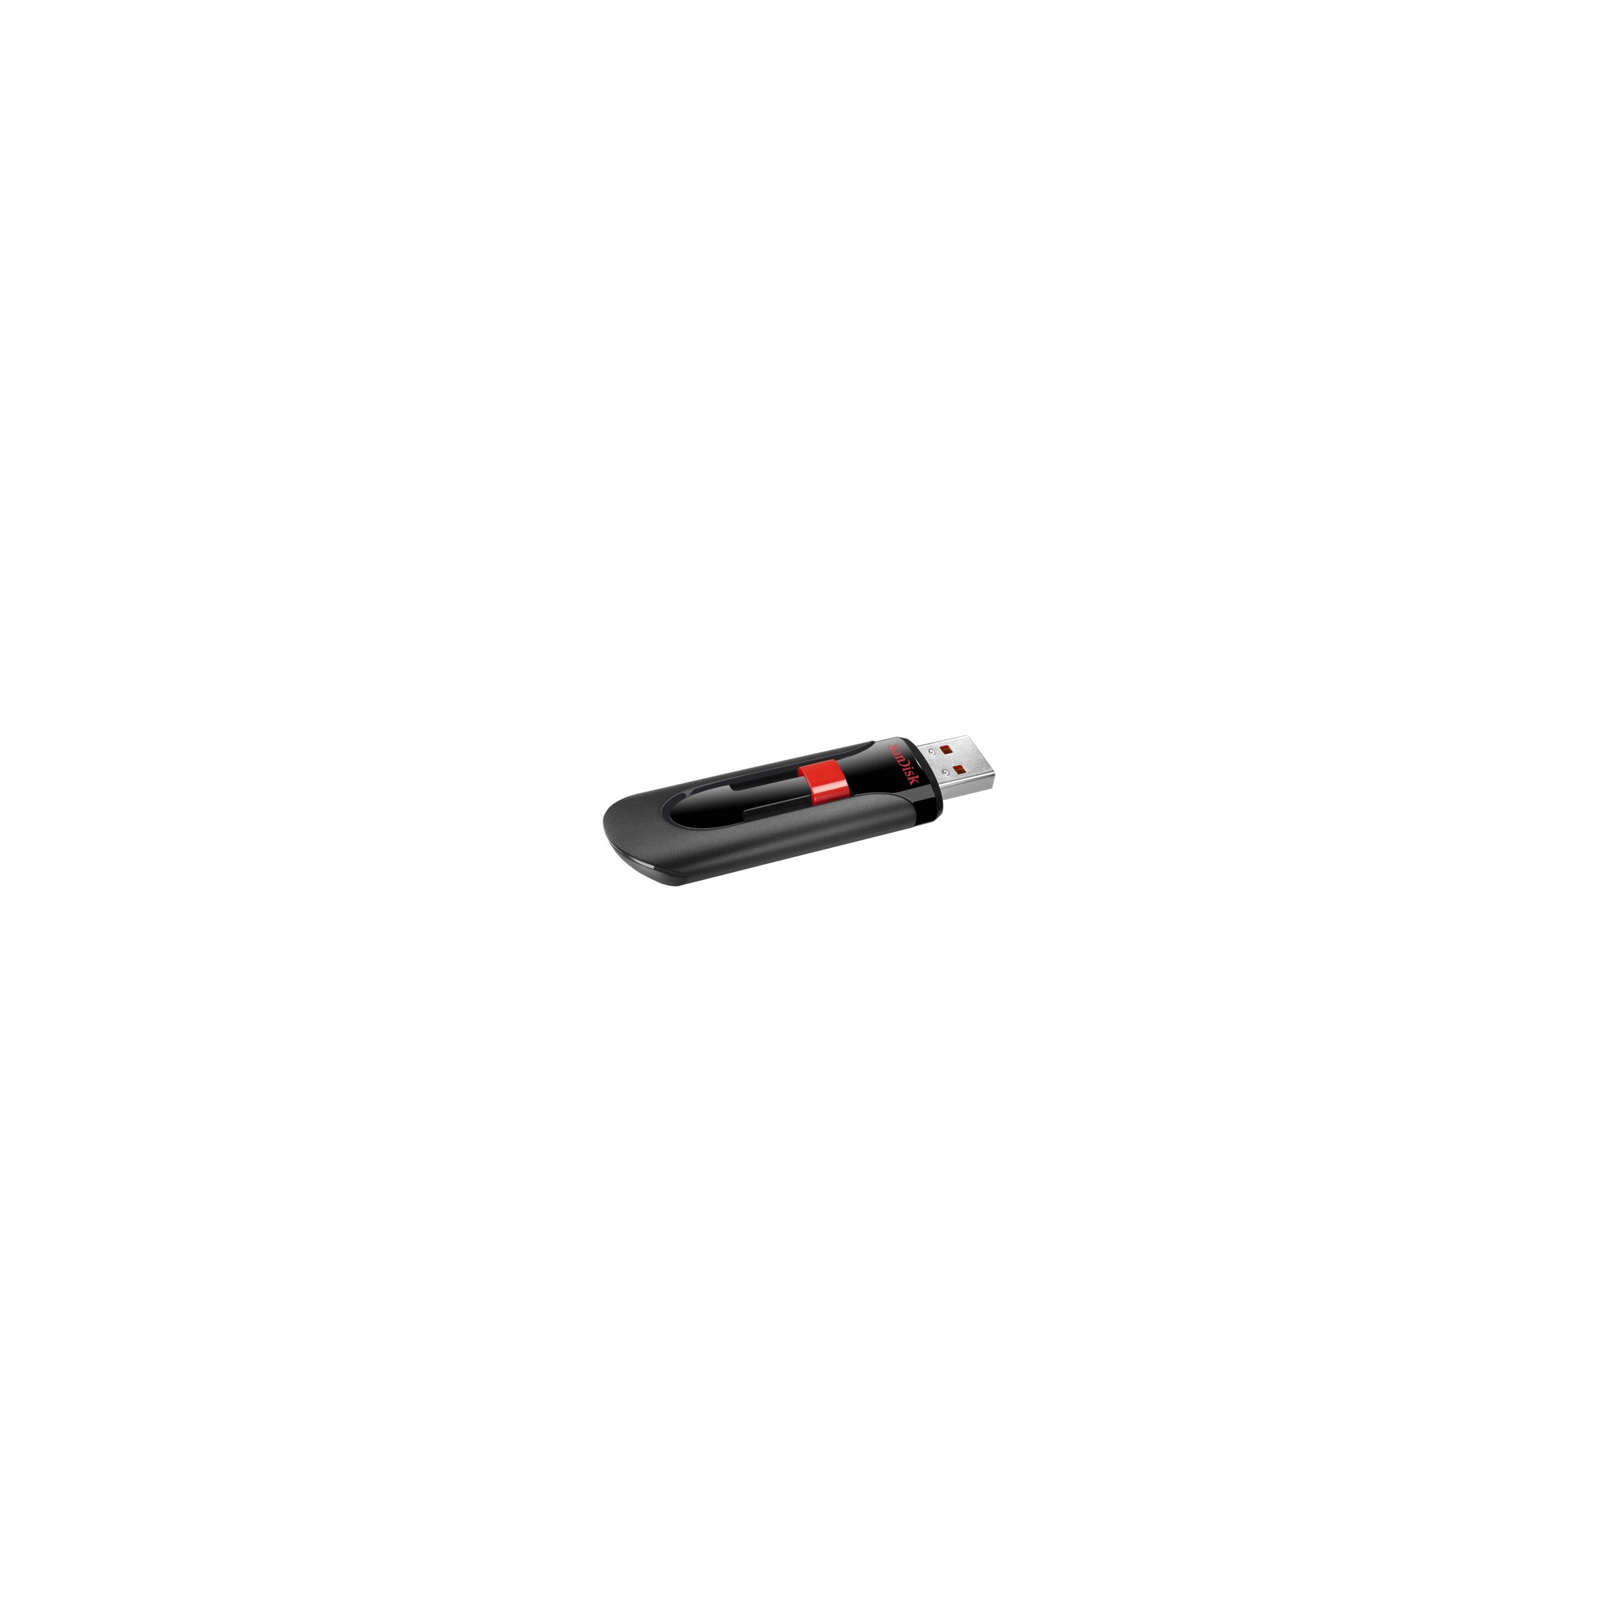 USB флеш накопичувач SanDisk 8Gb Cruzer Glide (SDCZ60-008G-B35) зображення 2